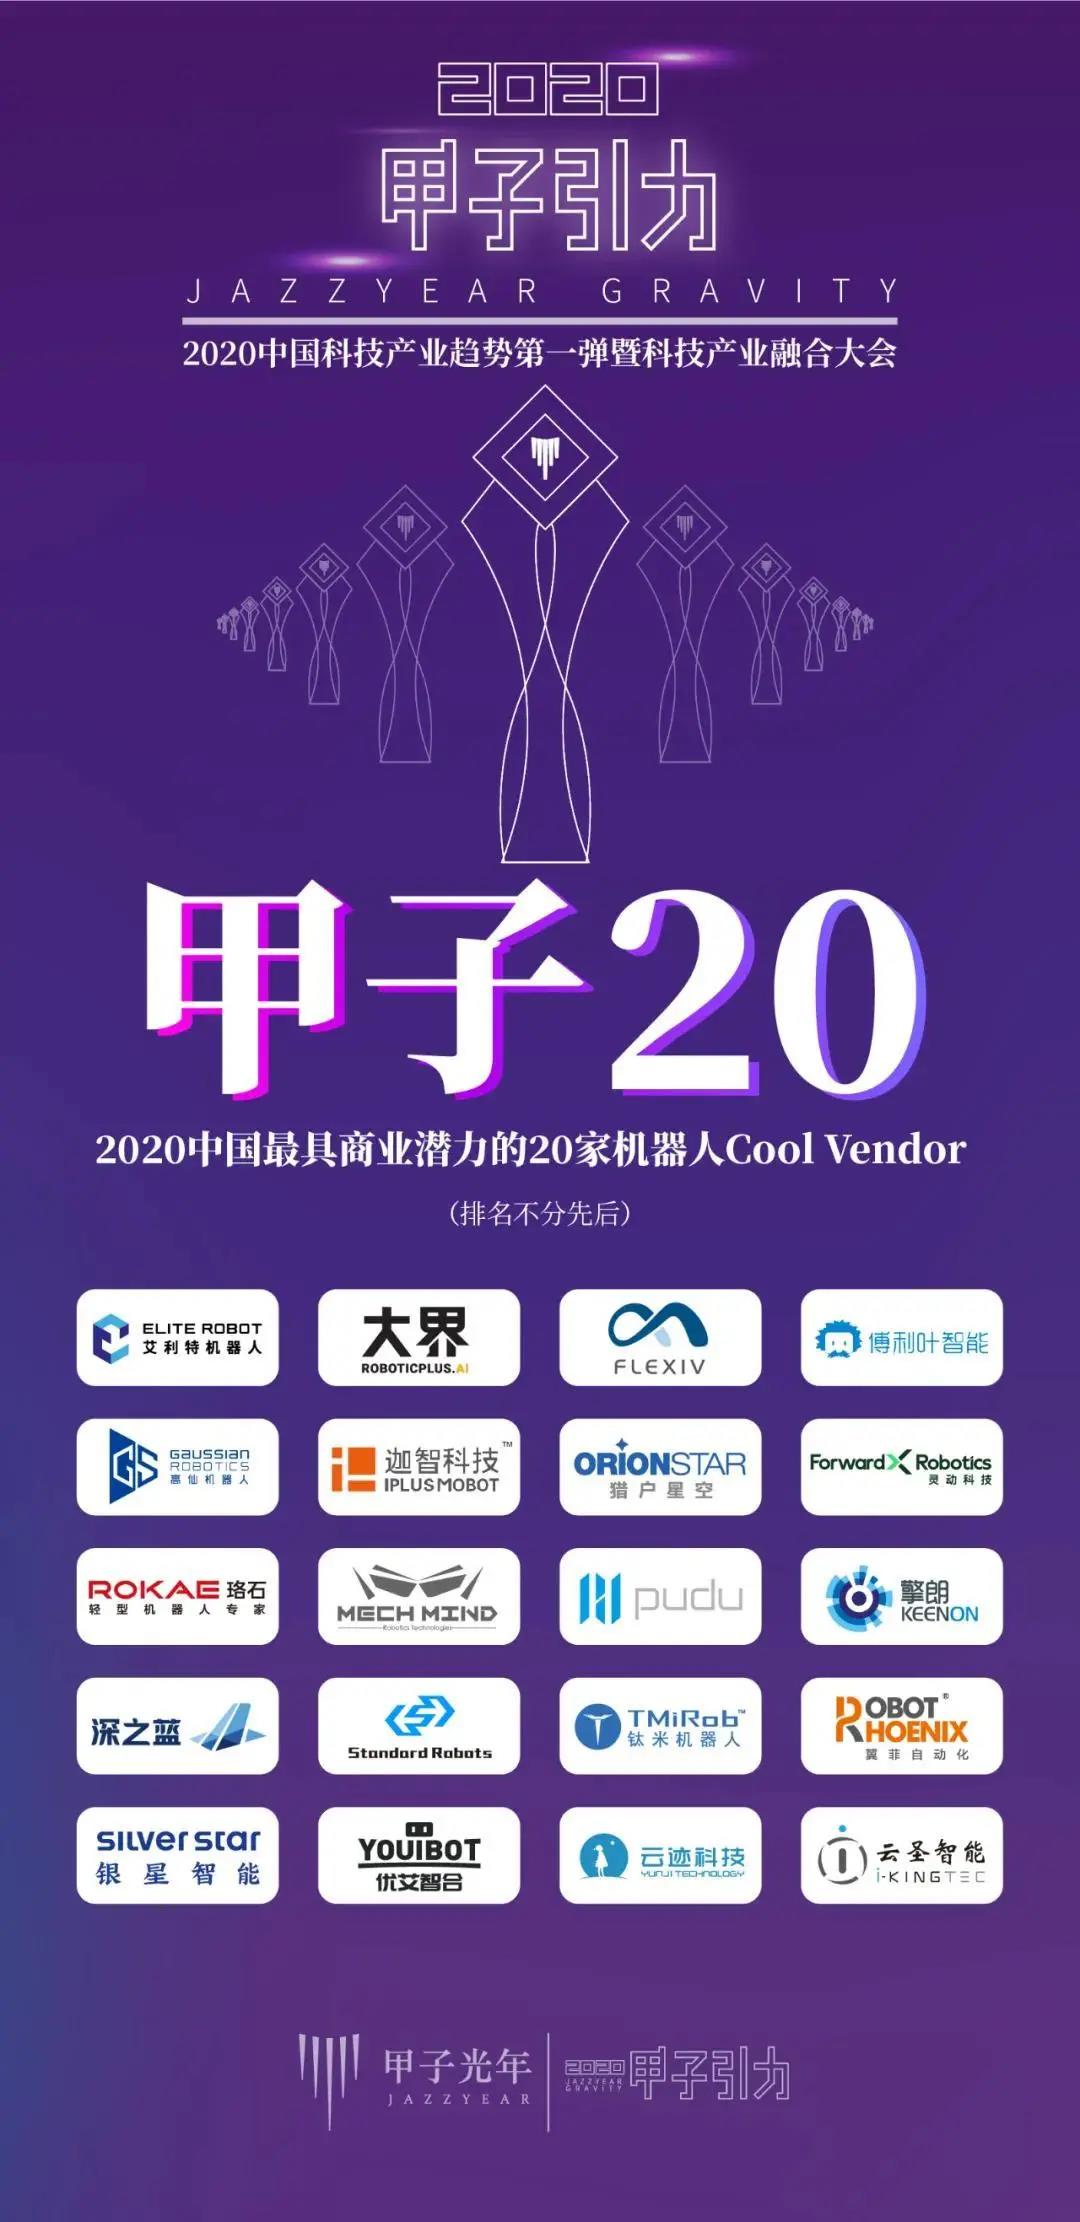 梅卡曼德入选“甲子20”——2020中国最具商业潜力的20家机器人Cool Vendor